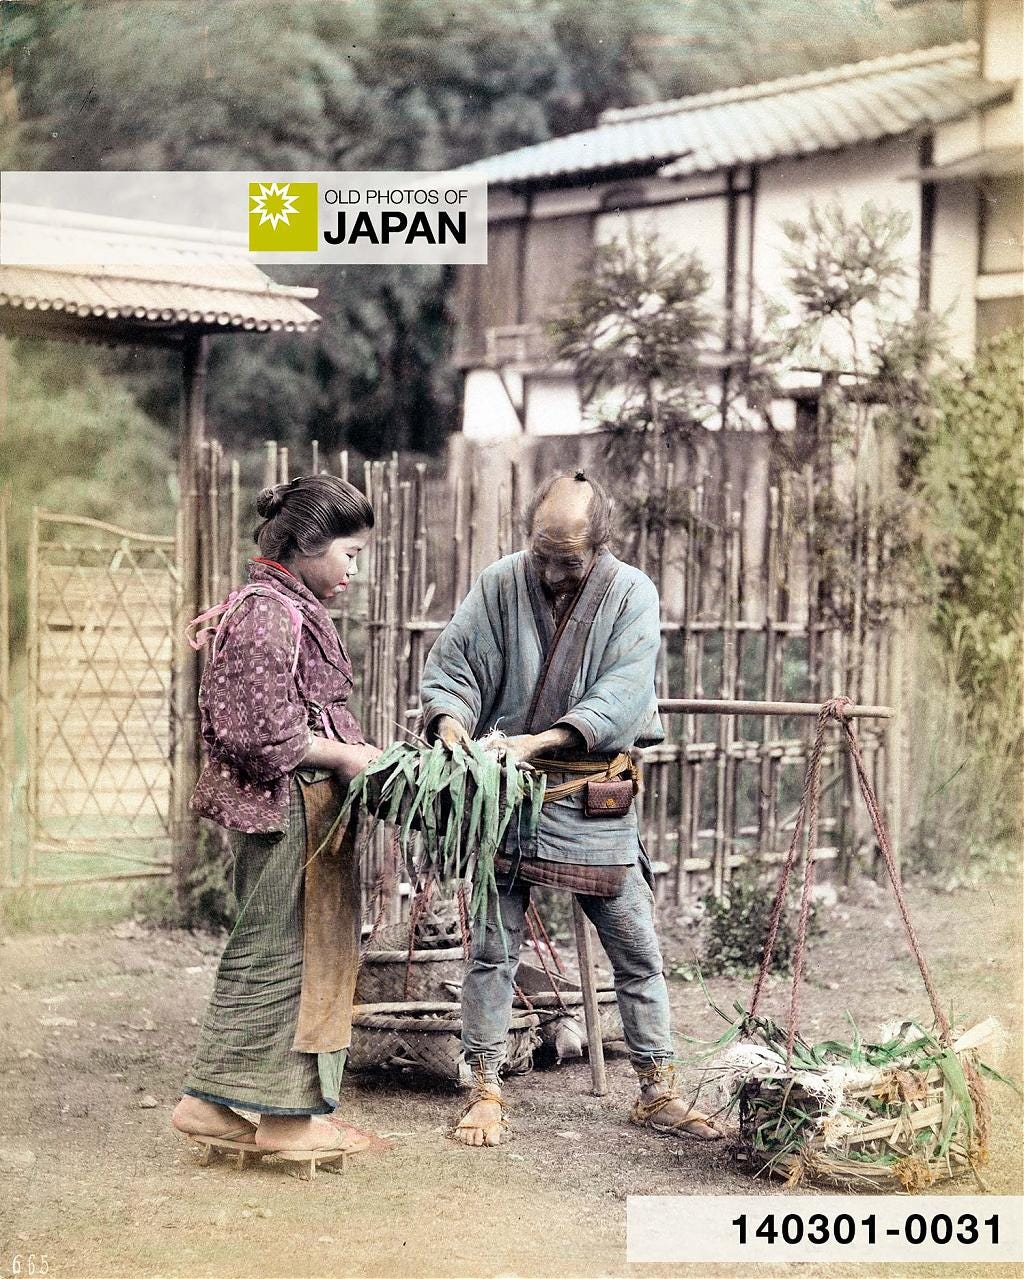 140301-0031 - Japanese Vegetable Vendor, 1890s